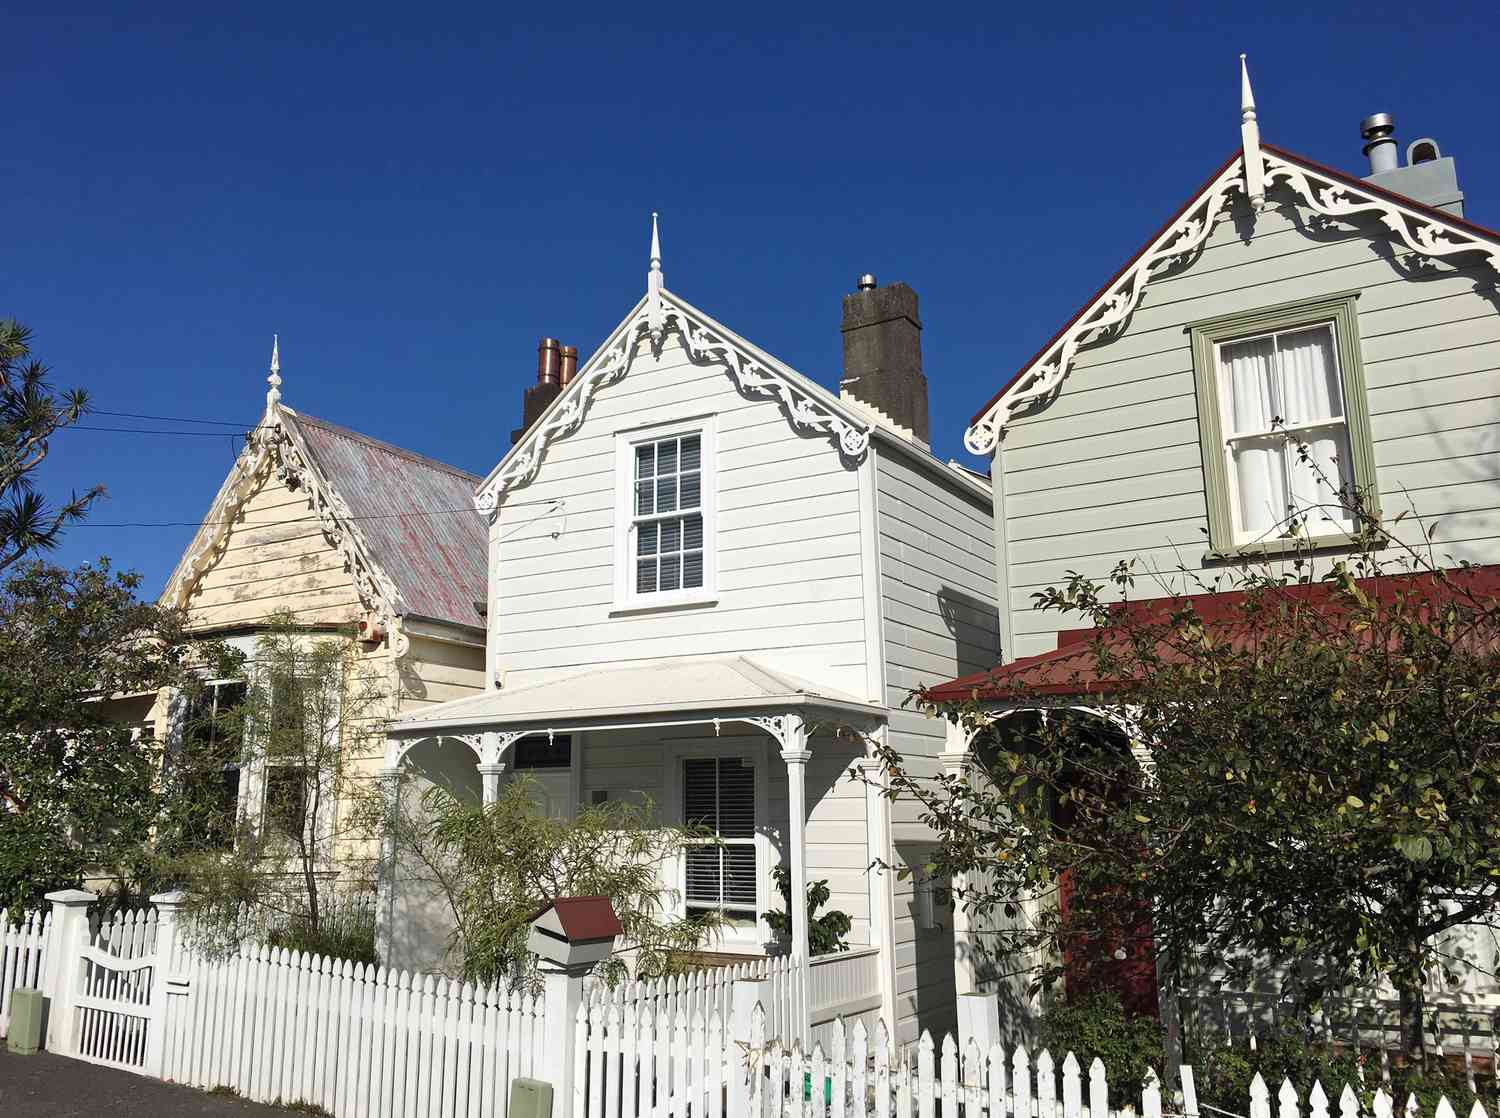 Viktorianische Häuser in Auckland, Neuseeland.